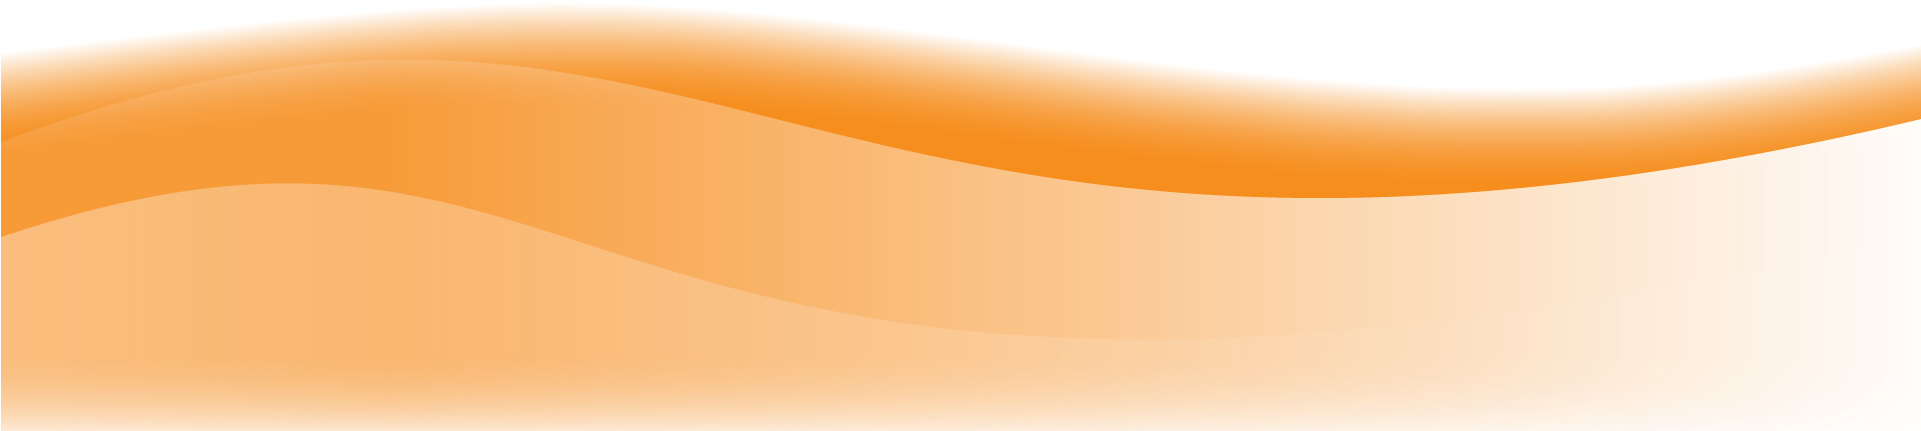 ناقلات أورانج موجة PNG صورة شفافة